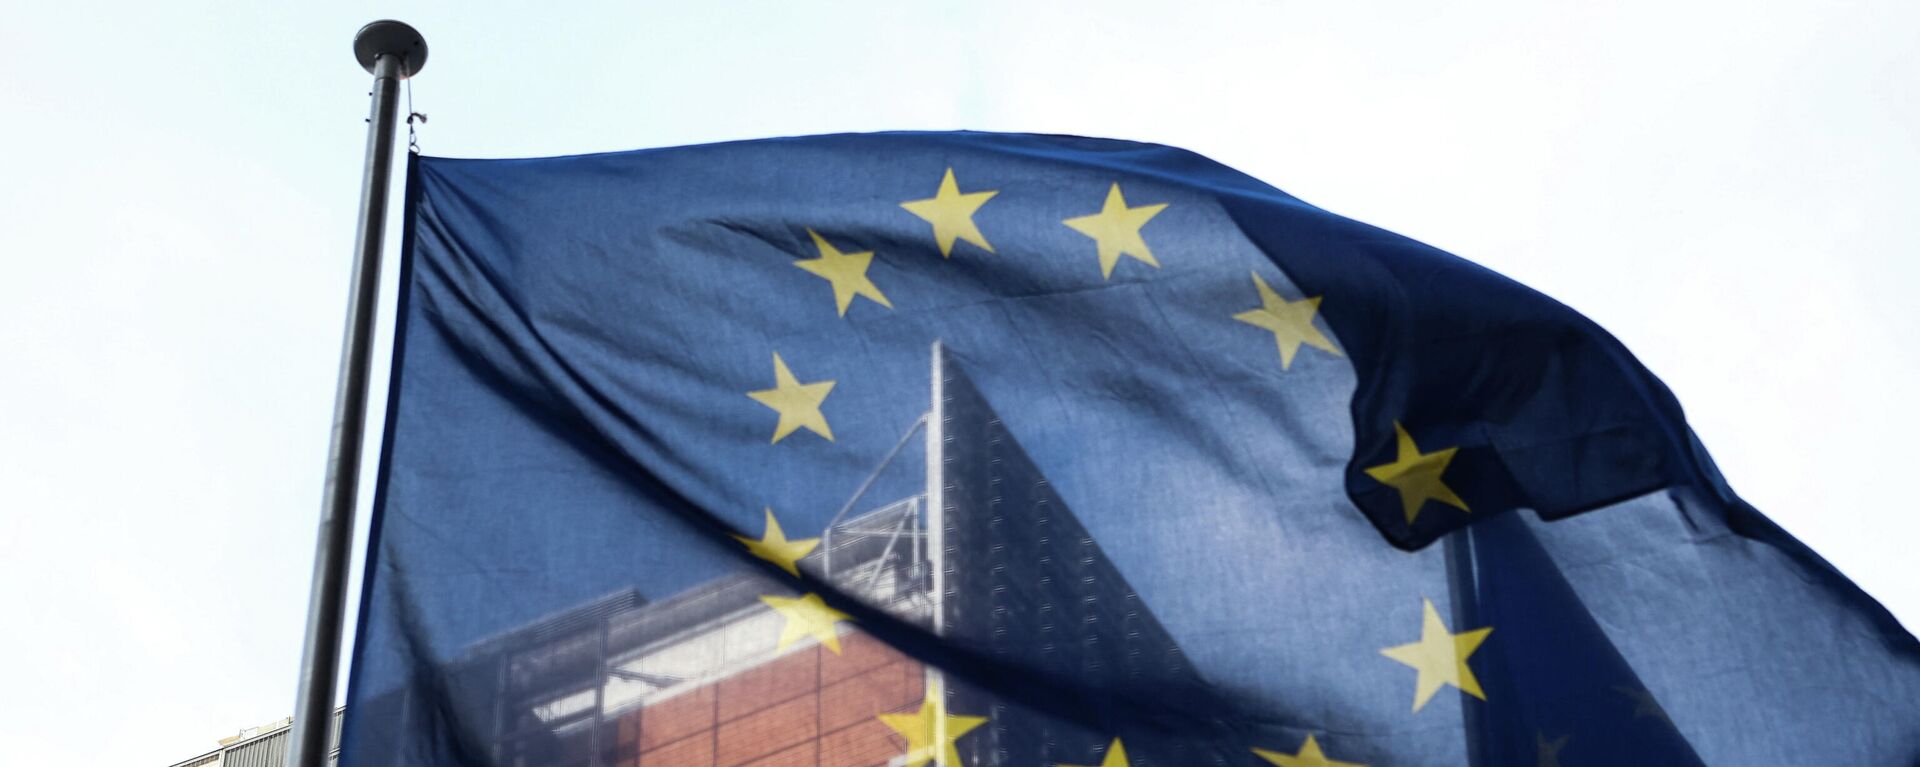 Застава Европске уније испред седишта Европске комисије у Бриселу - Sputnik Србија, 1920, 13.01.2022